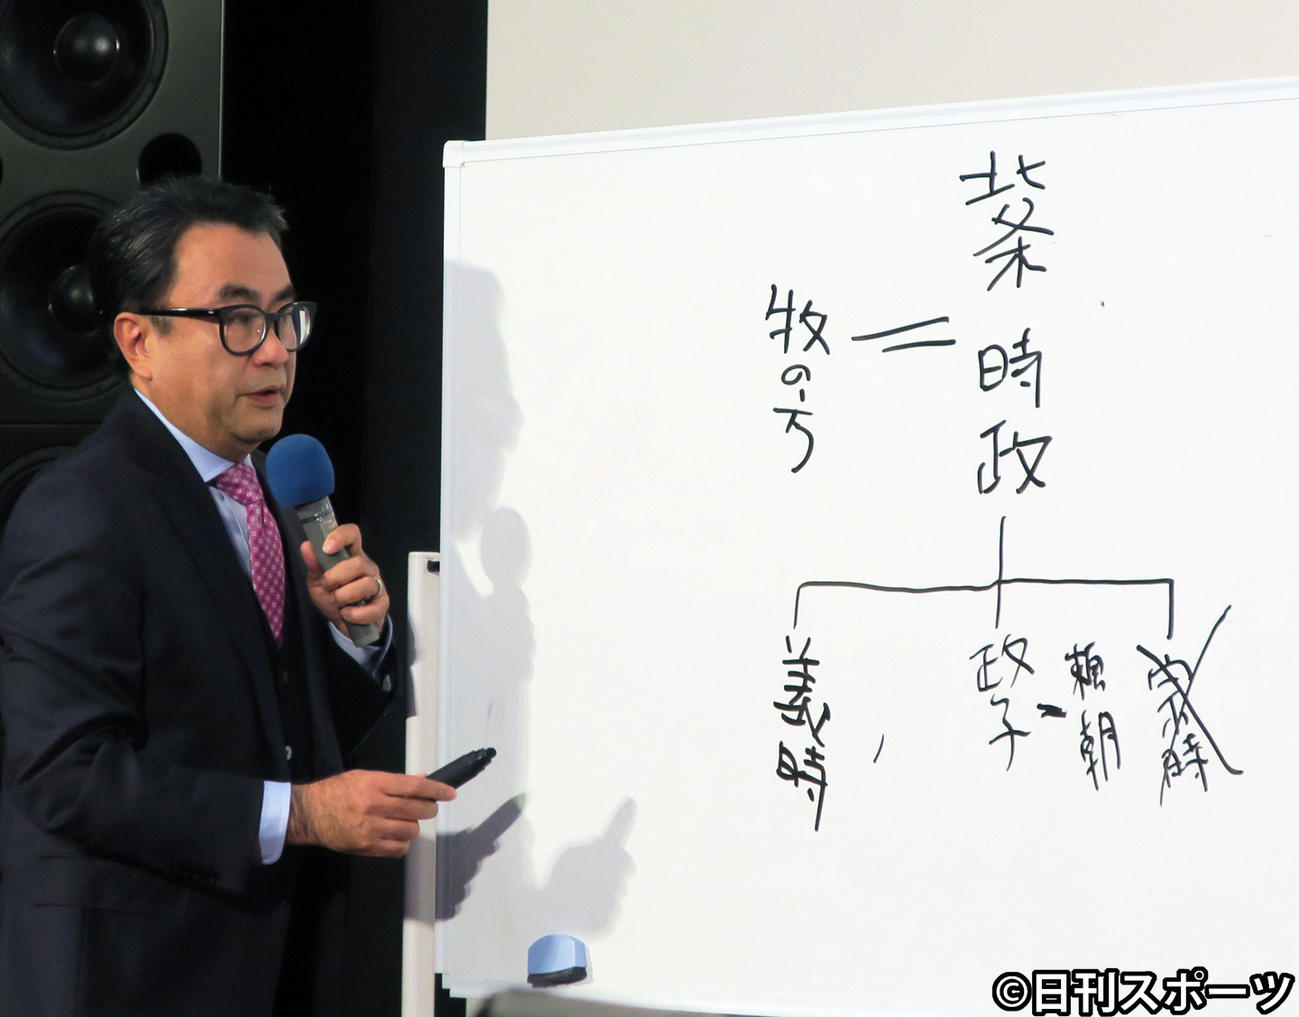 22年大河ドラマ「鎌倉殿の13人」の脚本を手掛ける三谷幸喜氏は、ホワイトボードを使って人物関係を説明する（2020年1月8日撮影）